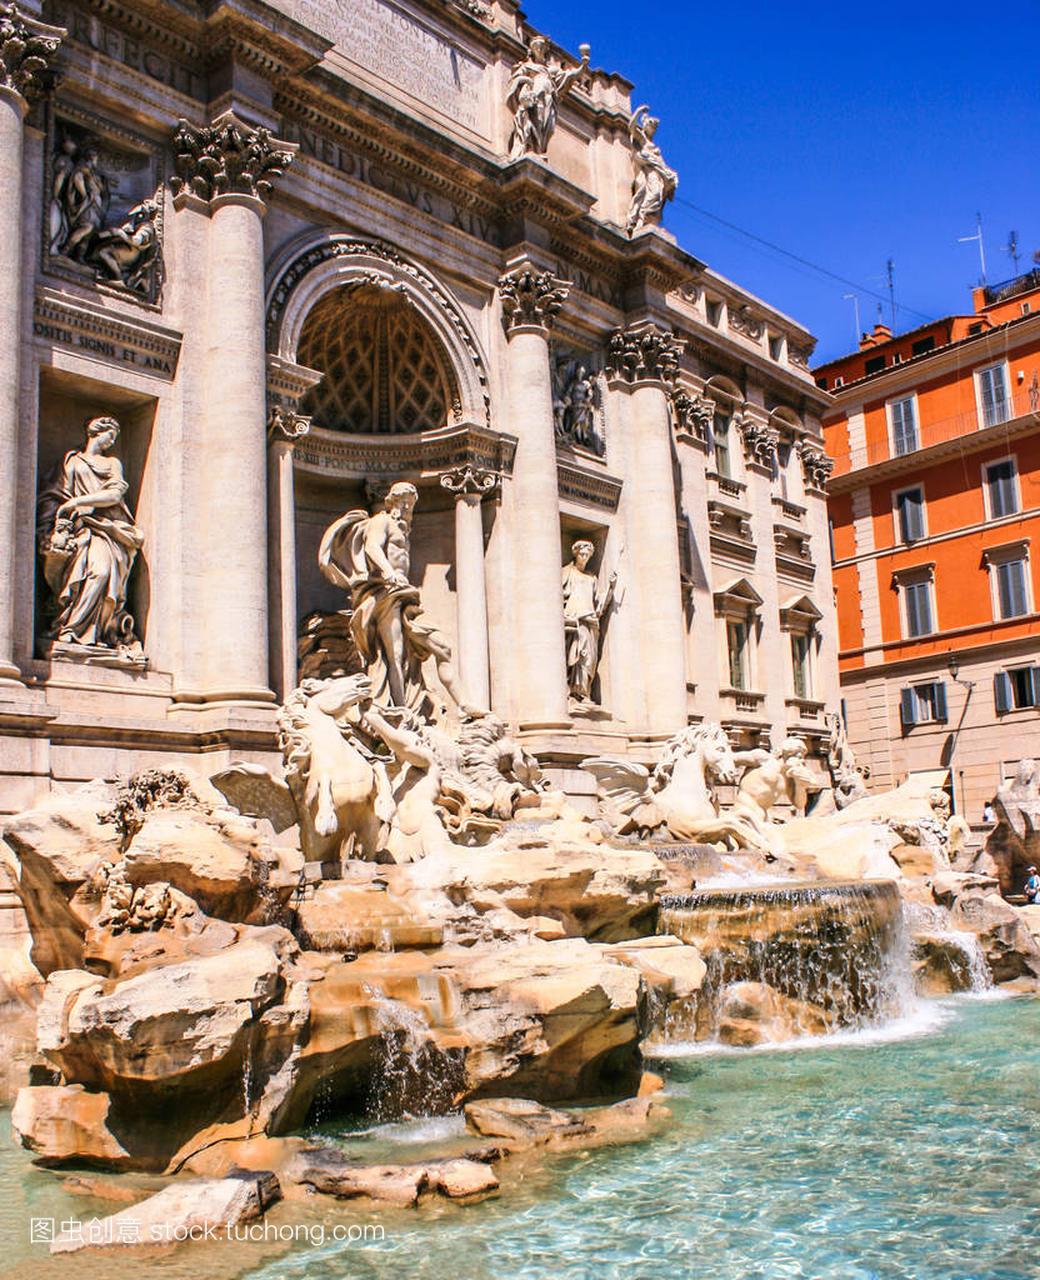 特雷维喷泉 (意大利语: 许愿),罗马,意大利,欧洲